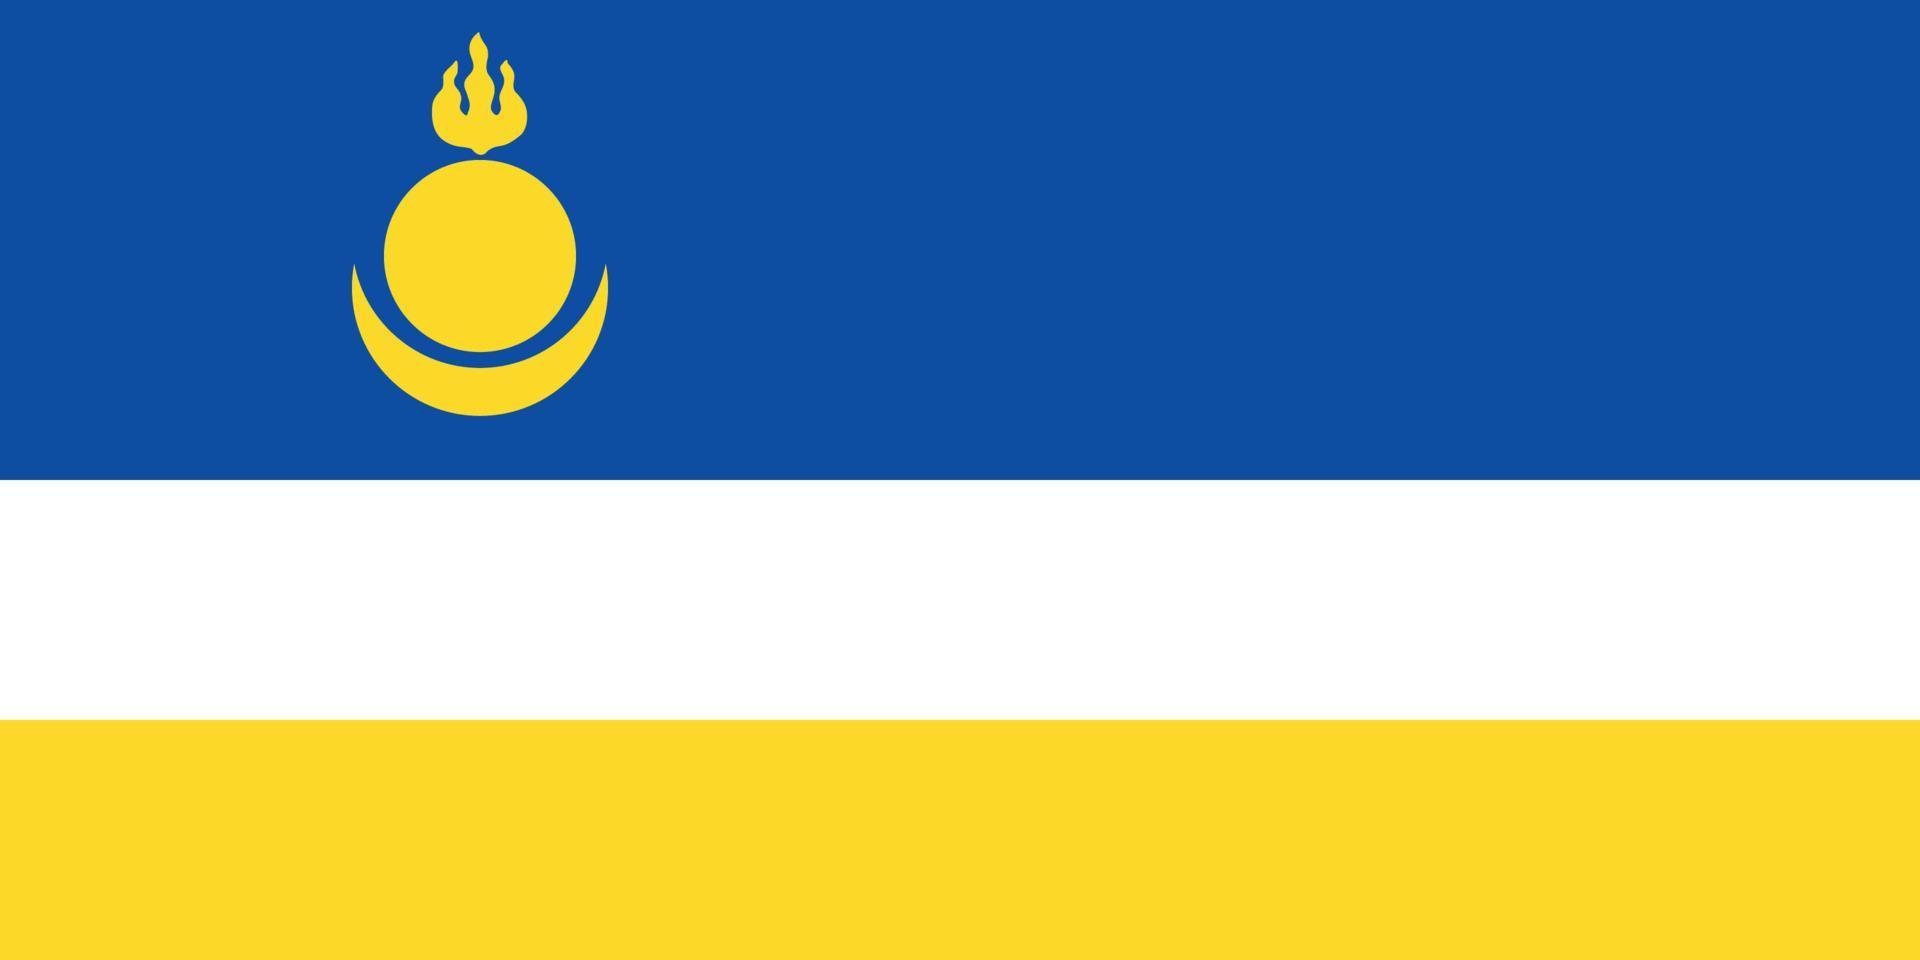 Buryatia officially flag vector